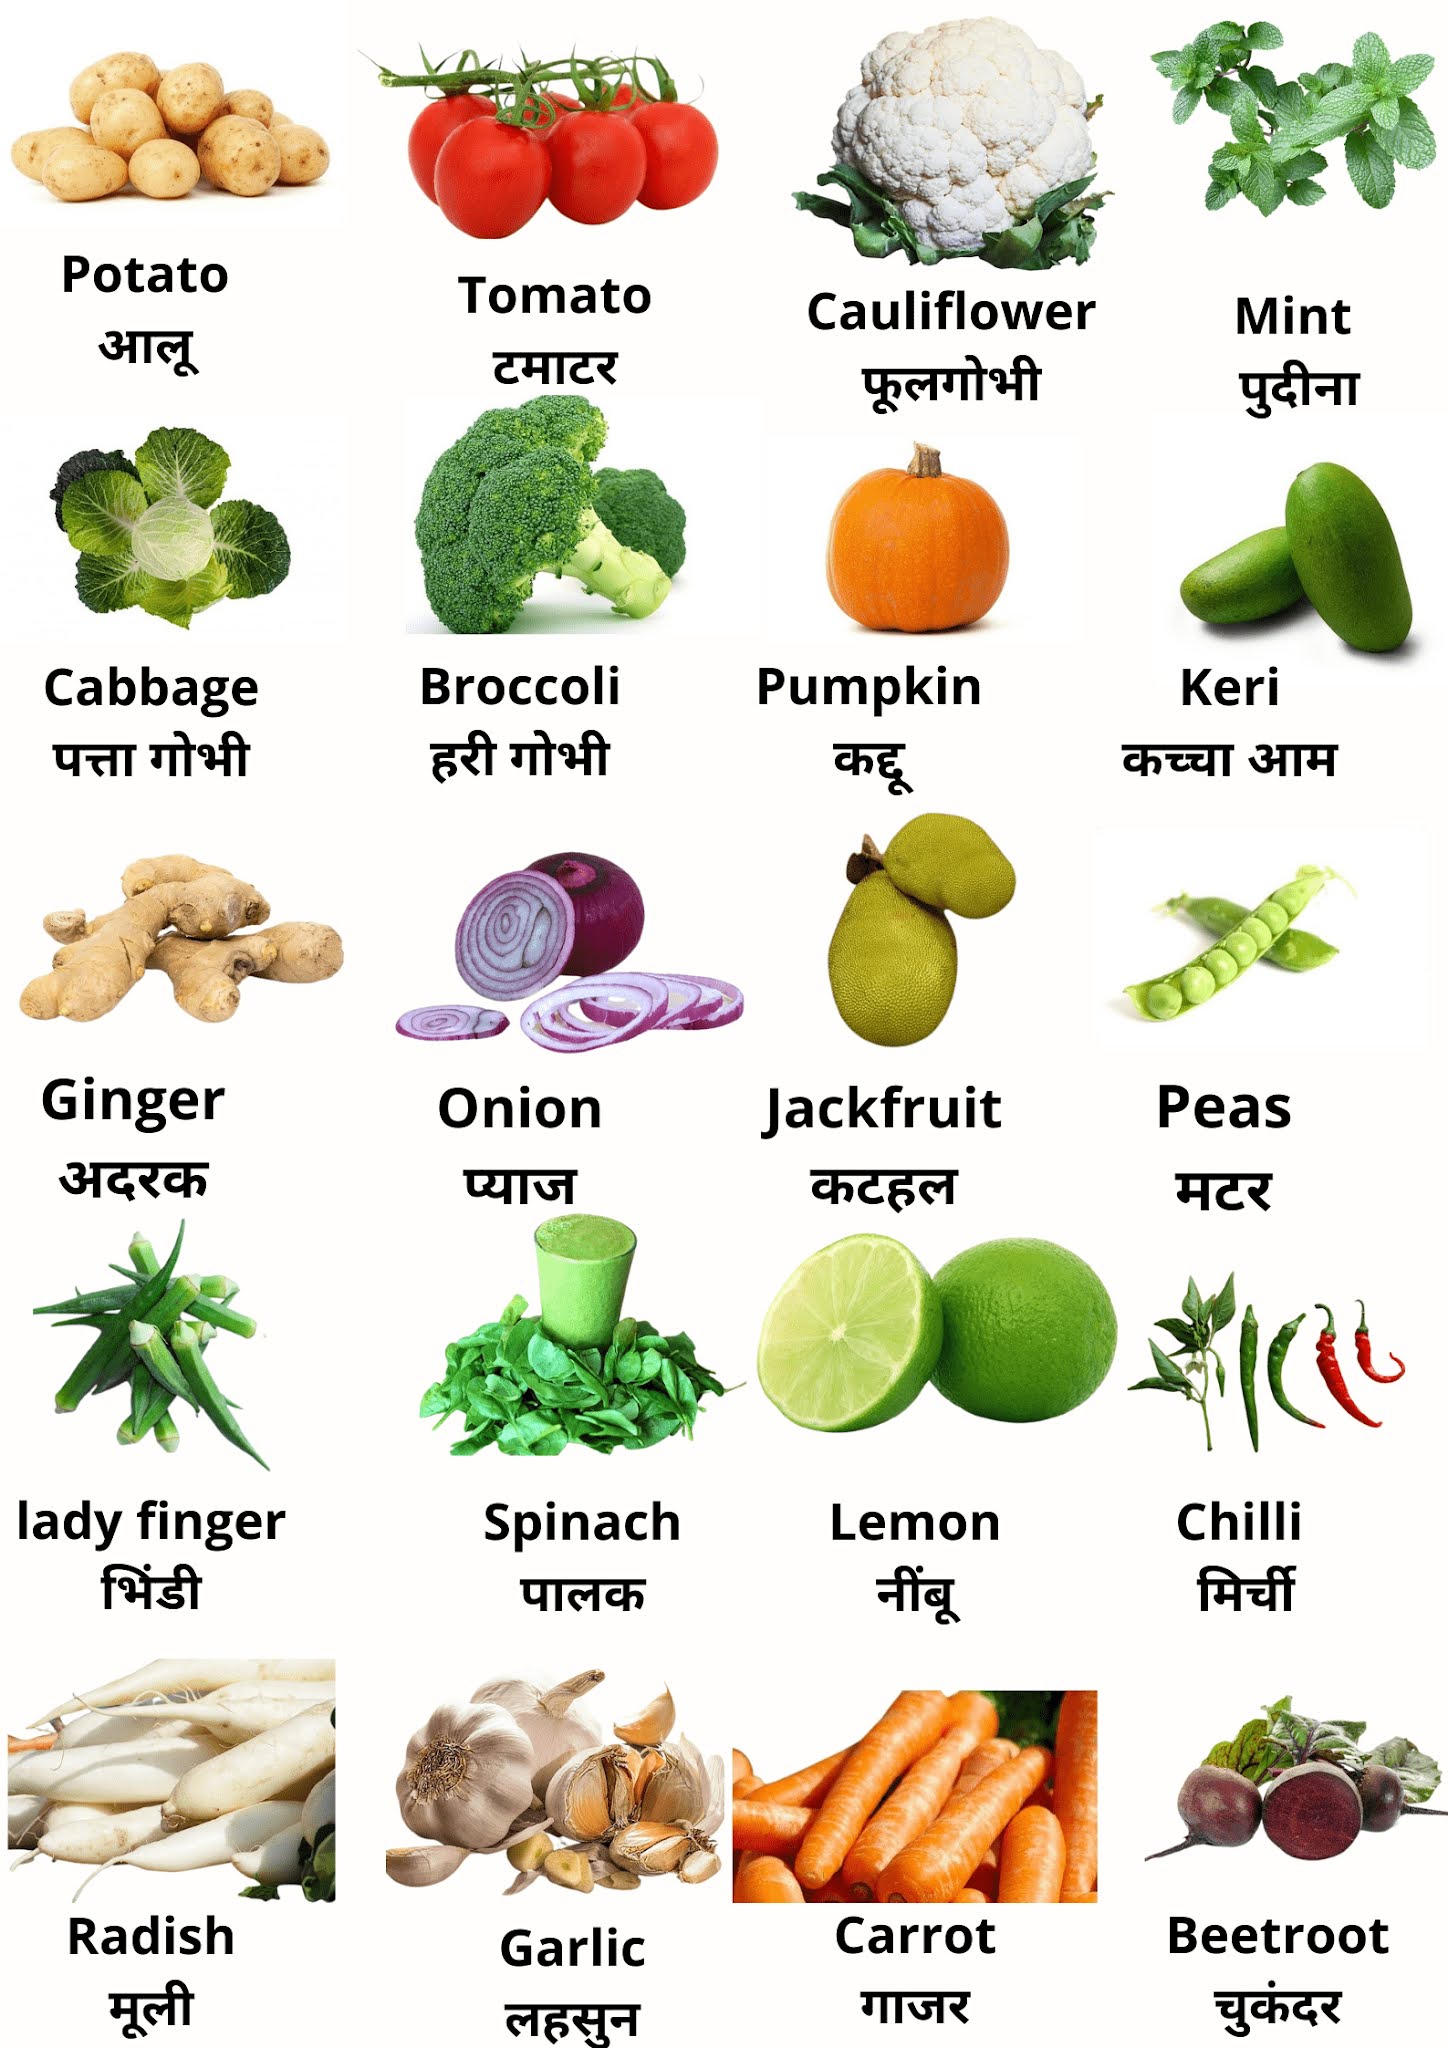 20 Vegetables name in Hindi & English : सब्जियों के नाम हिंदी और अंग्रेजी में